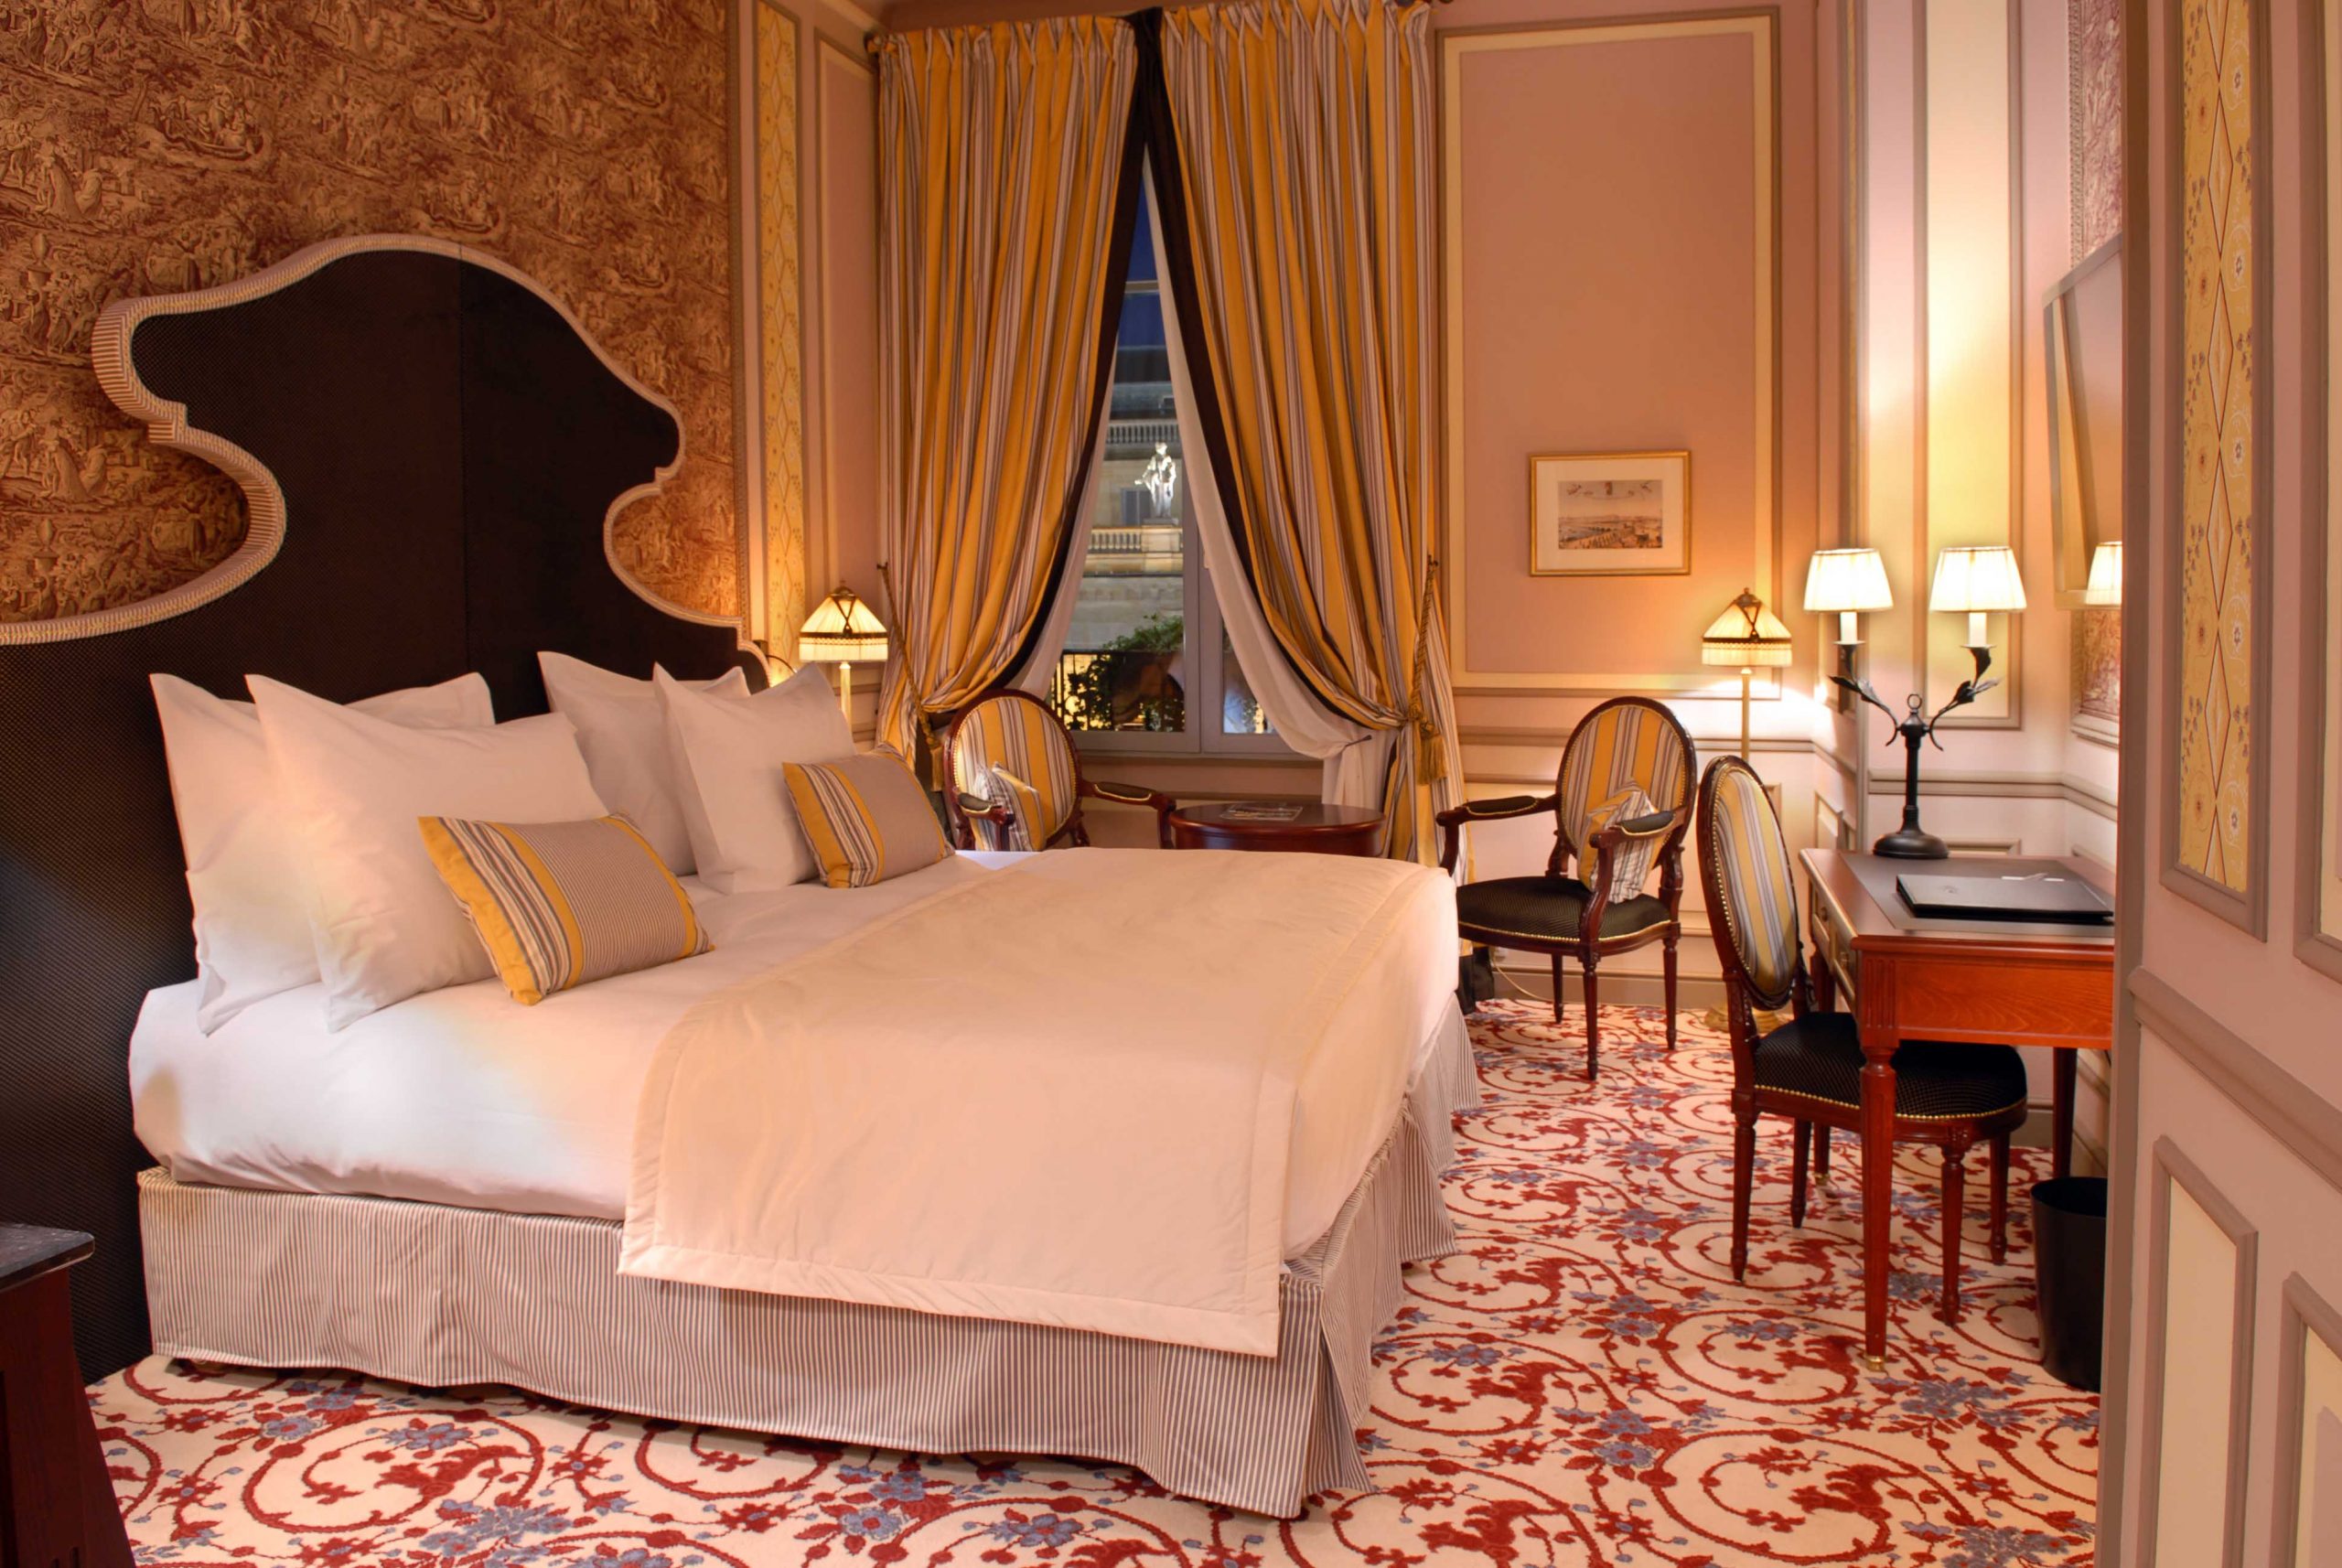 InterContinental Bordeaux Le Grand Hotel Chambre et Suite Executive-217-01-@Alain-Caboche